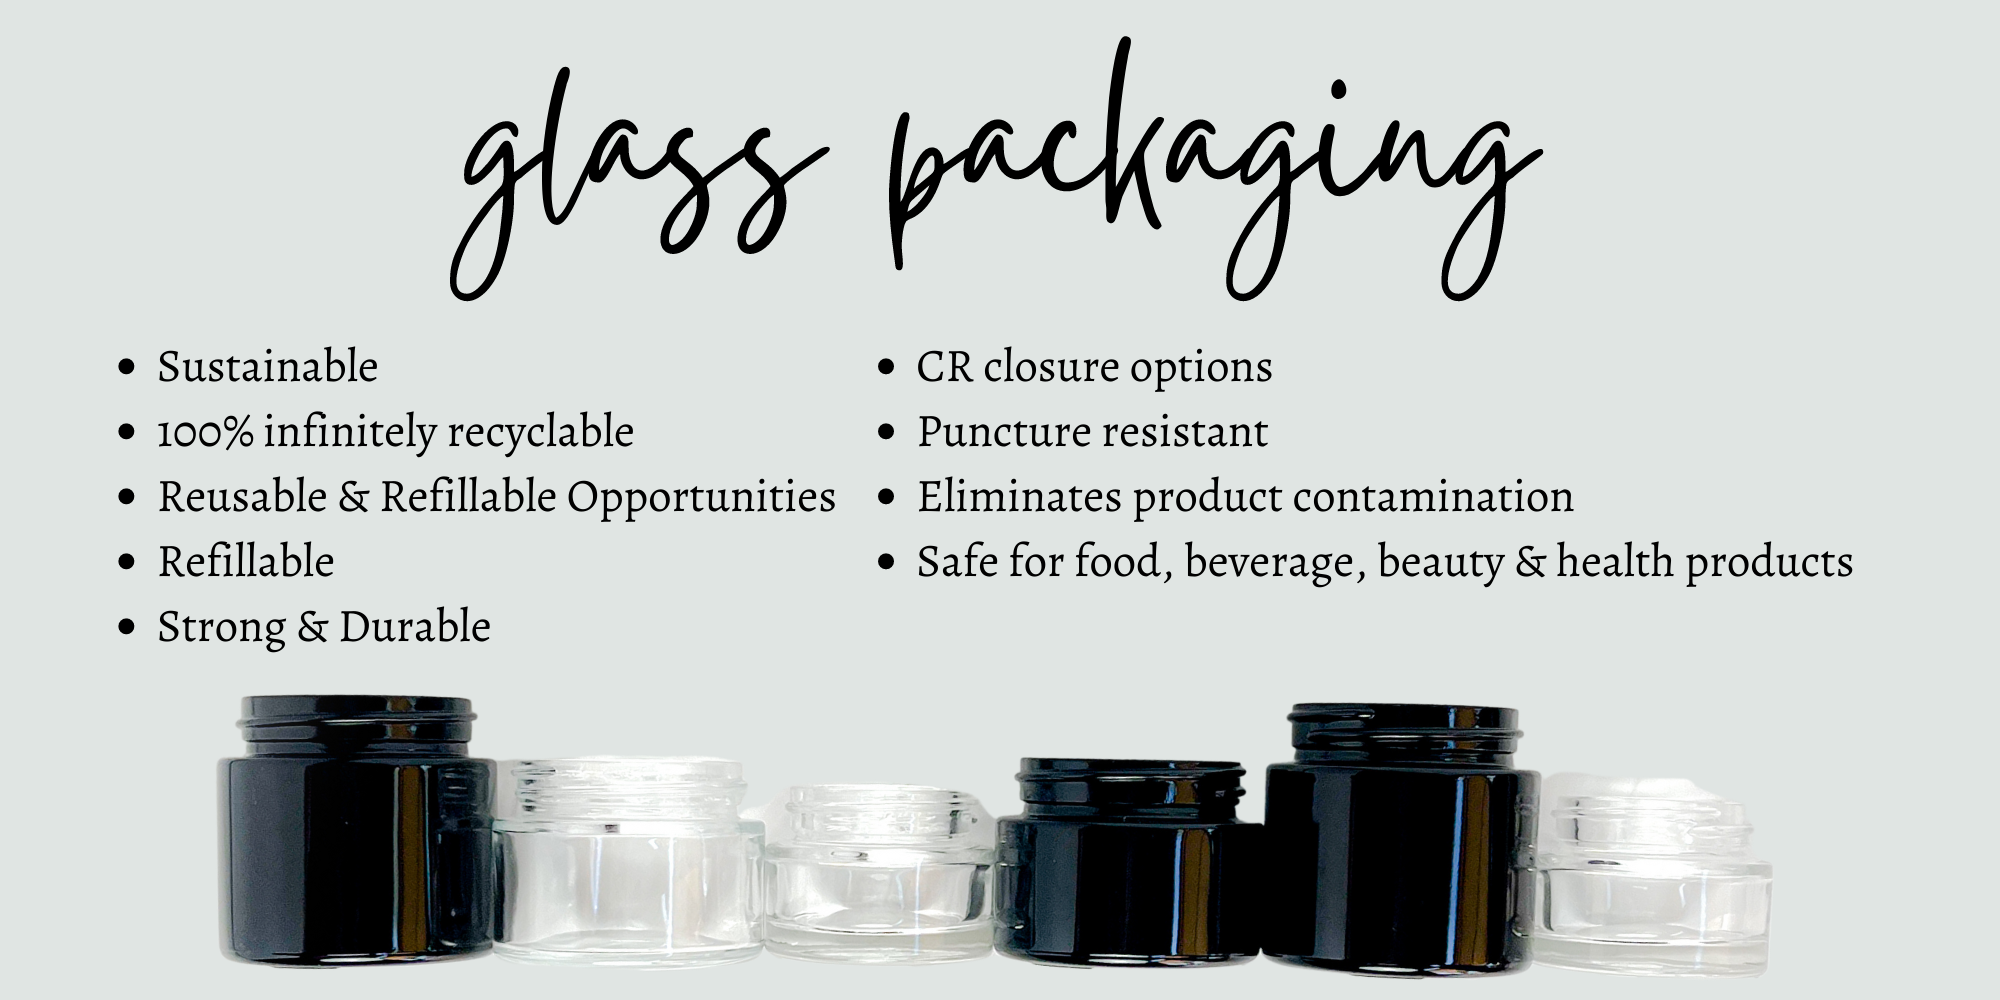 glasspackaging_hbi